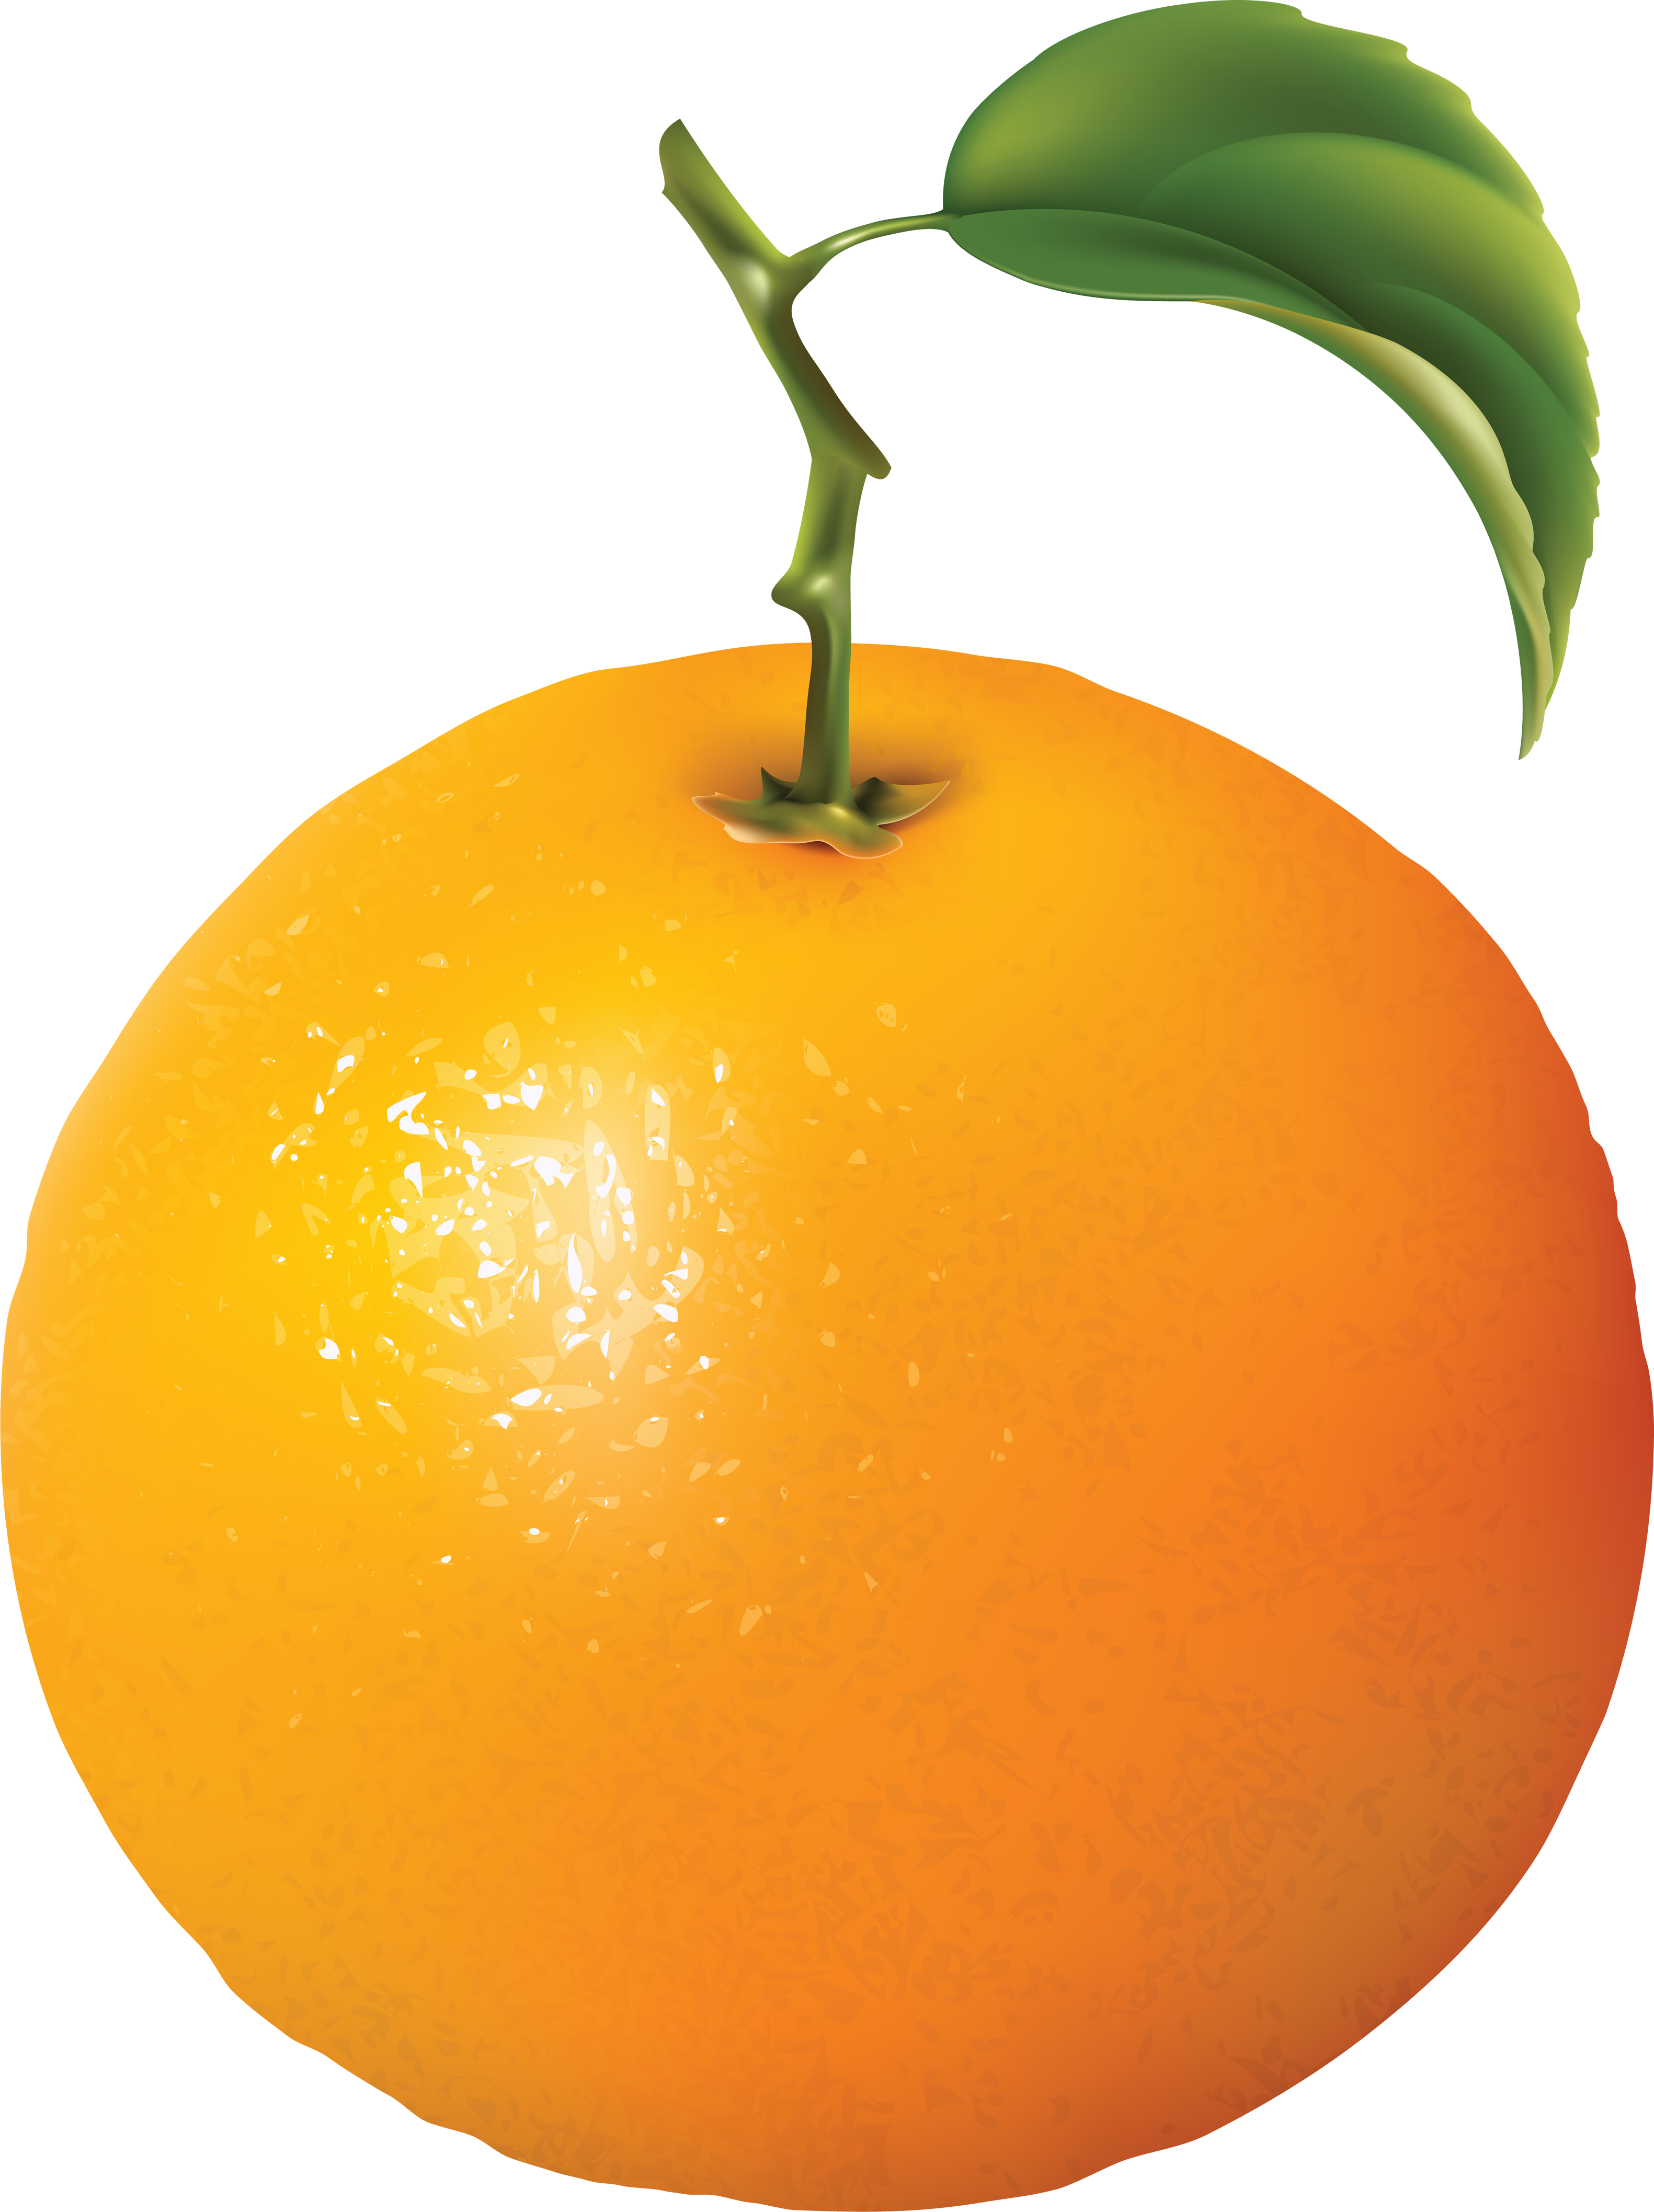 Orange Png Image Fruit Images In Png Format